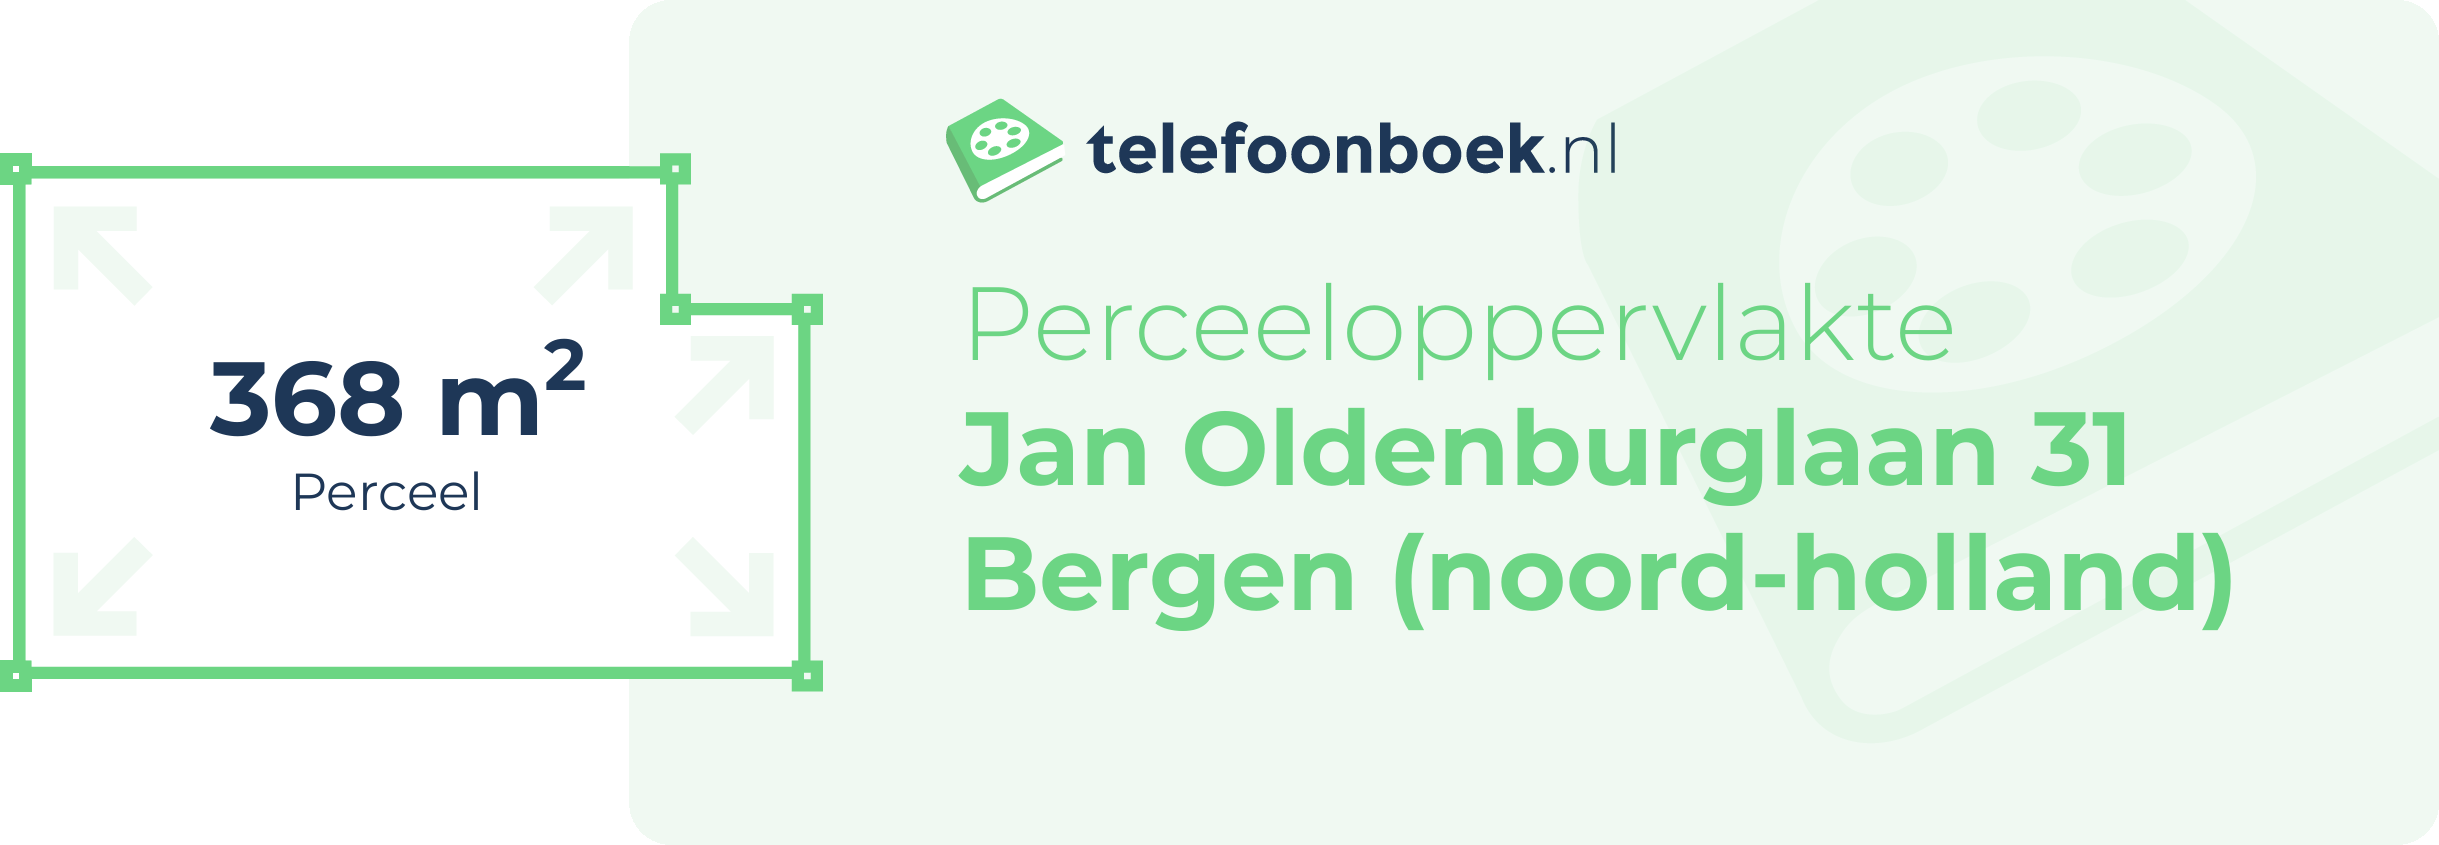 Perceeloppervlakte Jan Oldenburglaan 31 Bergen (Noord-Holland)